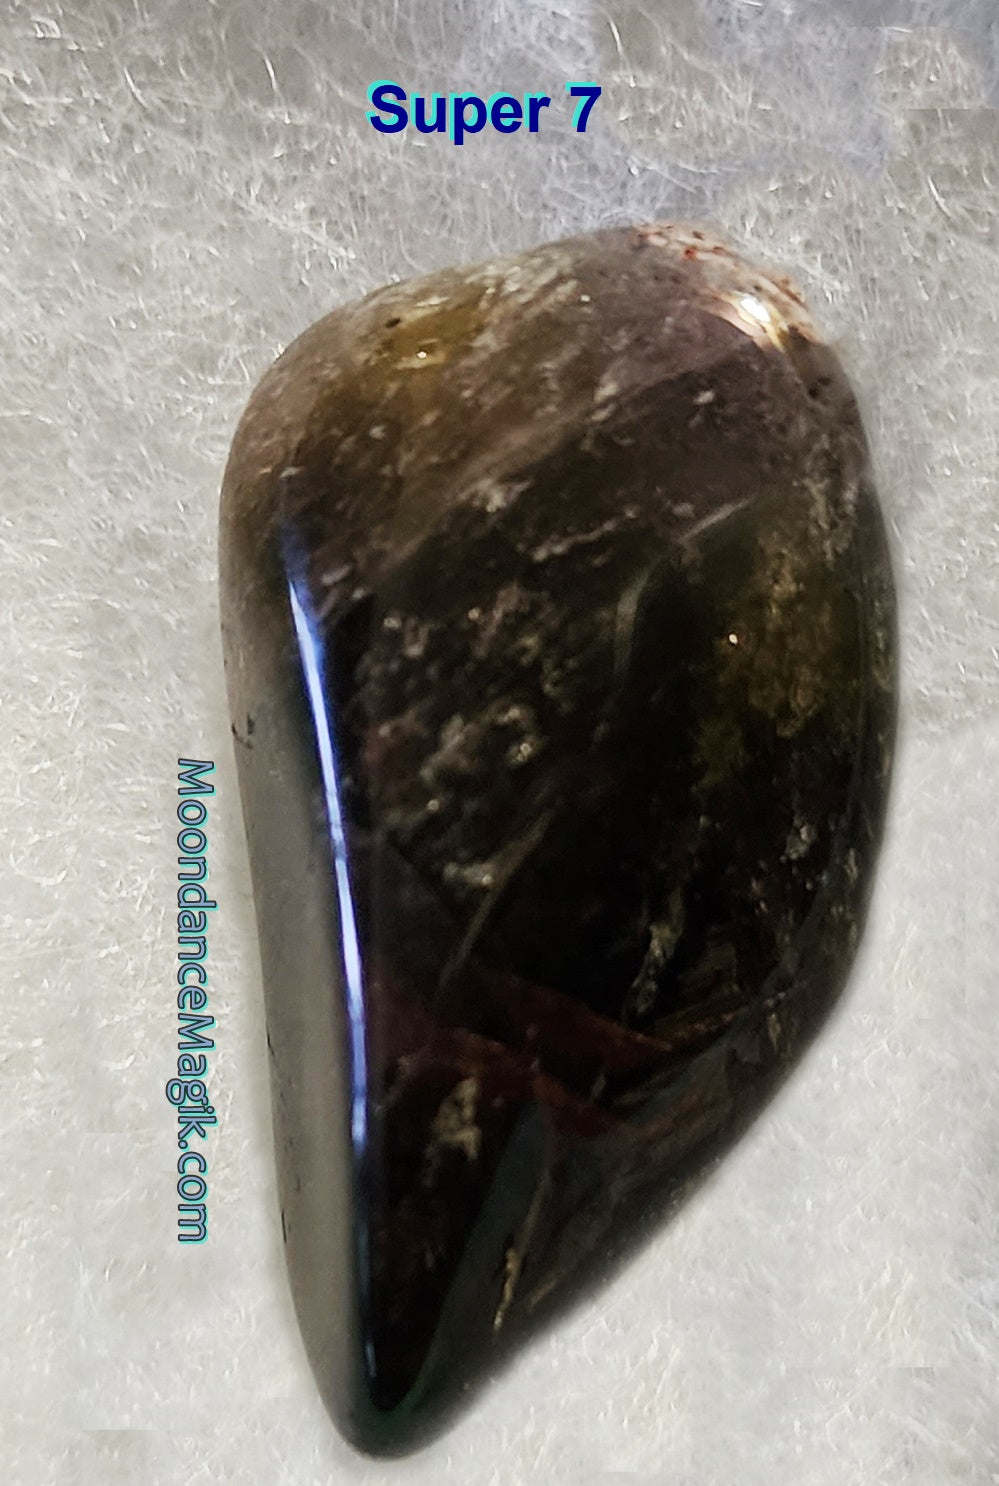 Super 7 Crystal Polished Tumble -  The Amazing Sacred Stone!